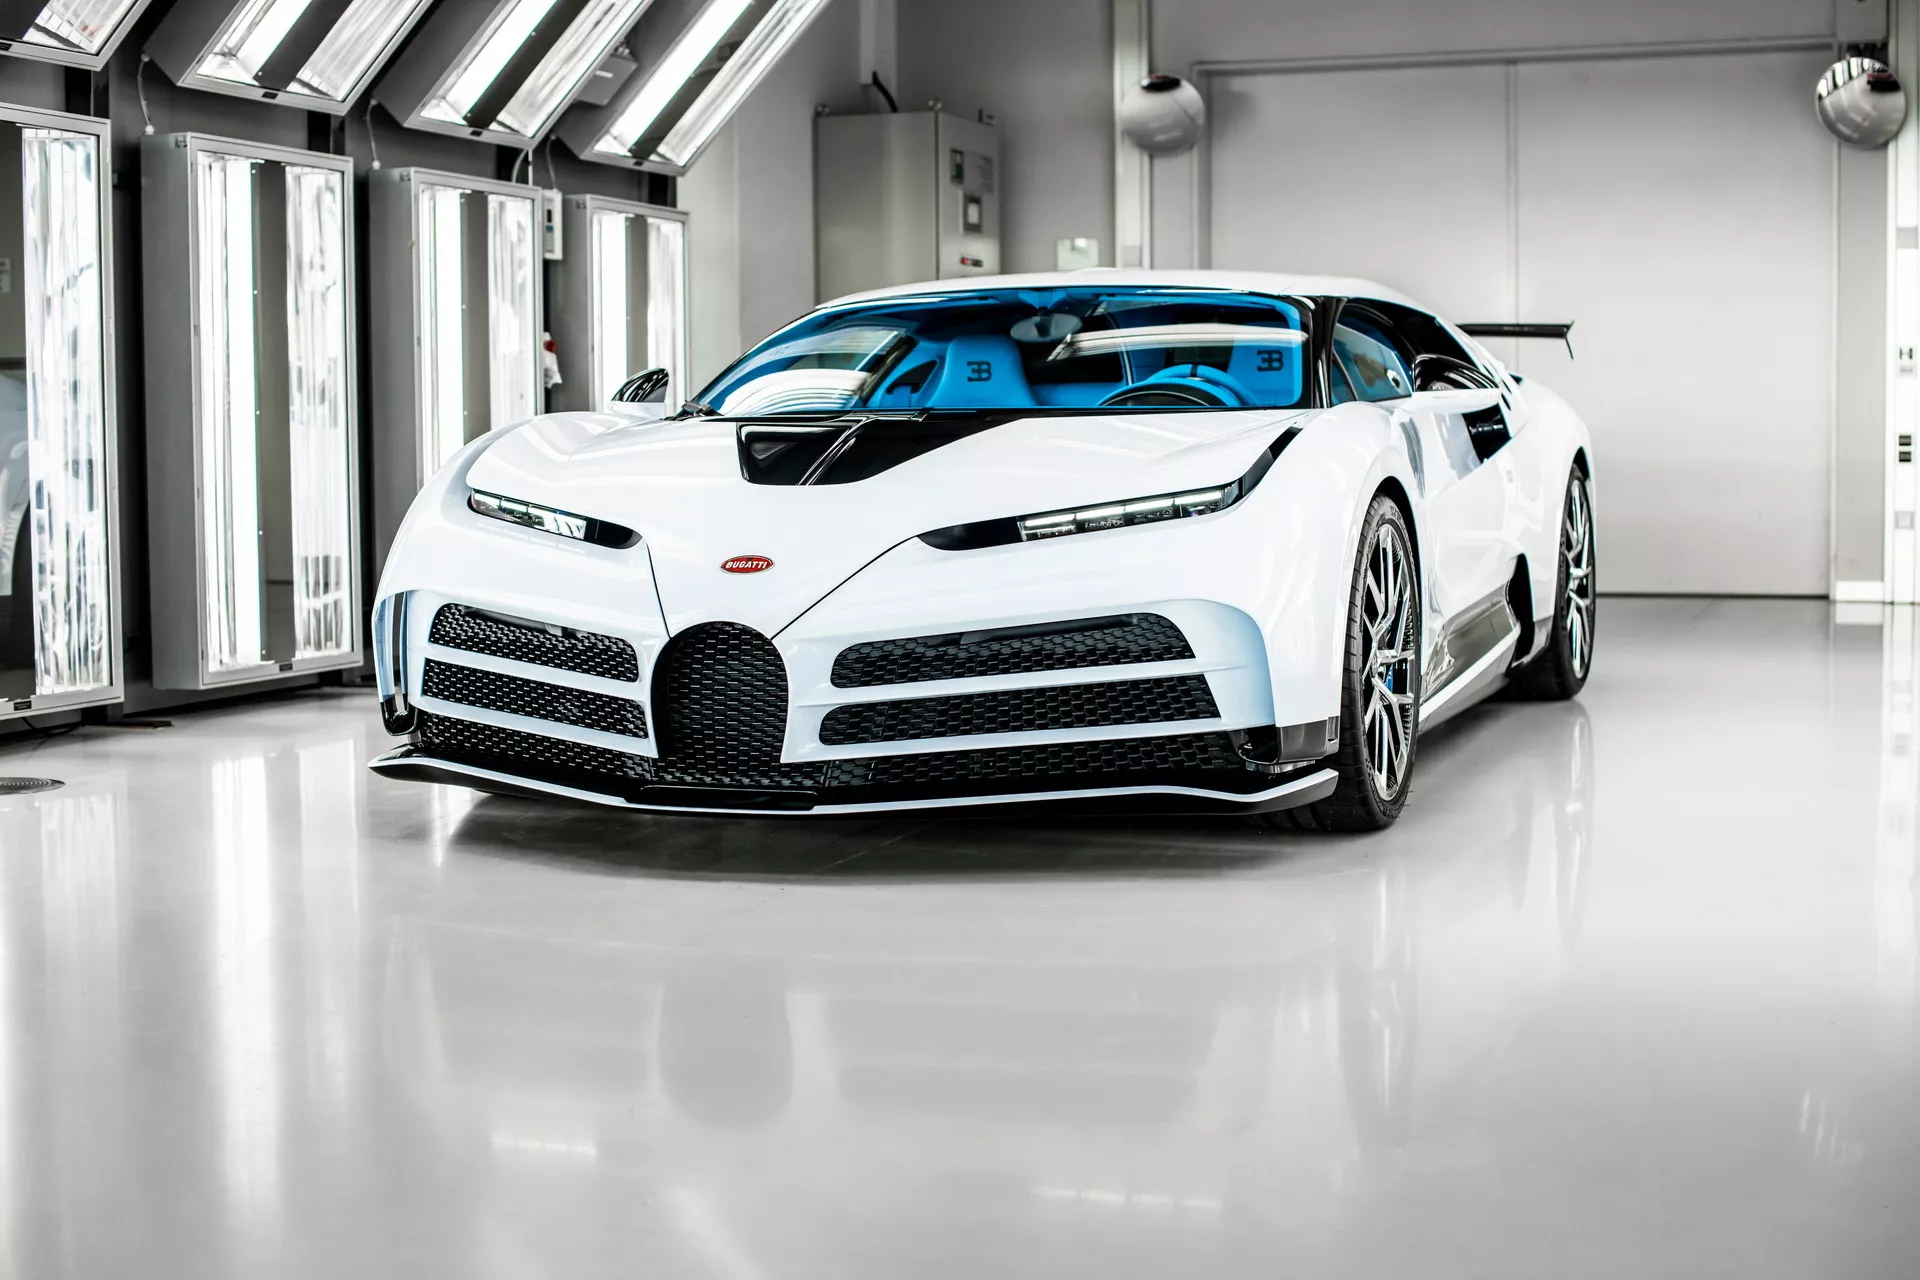 Siêu xe triệu đô Bugatti Centodieci cuối cùng được giao đến tay khách hàng bugatti-centodieci-last-example-2.webp